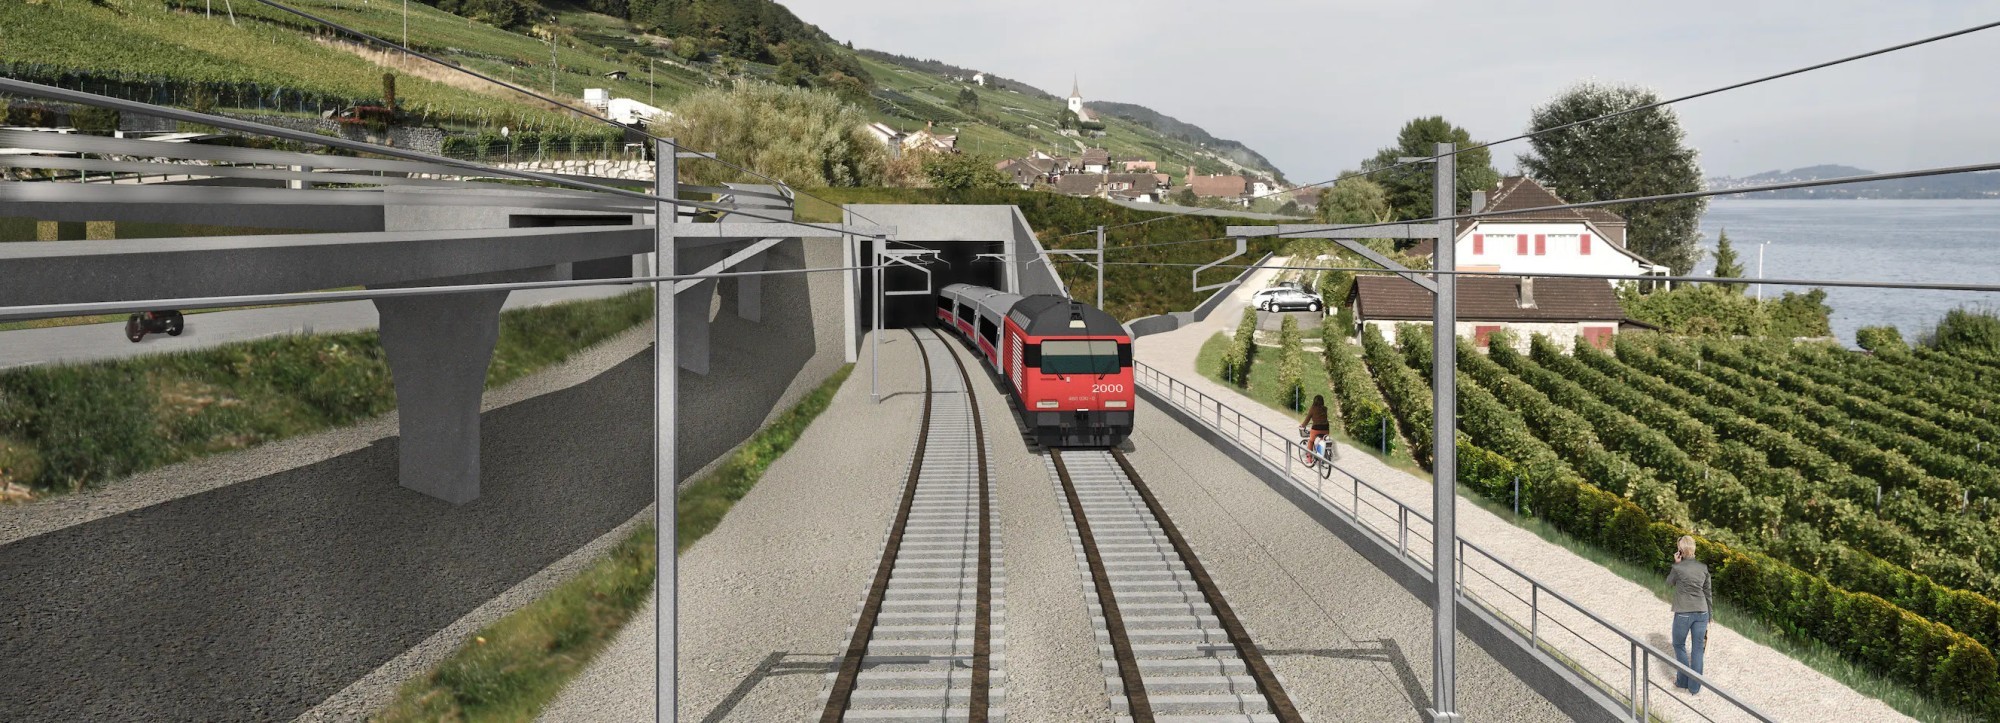 Implenia remporte un autre projet complexe d’infrastructure ferroviaire en Suisse avec le lot 2 du «tunnel de Ligerz» dans le cadre du doublement de la voie Gléresse – Douanne